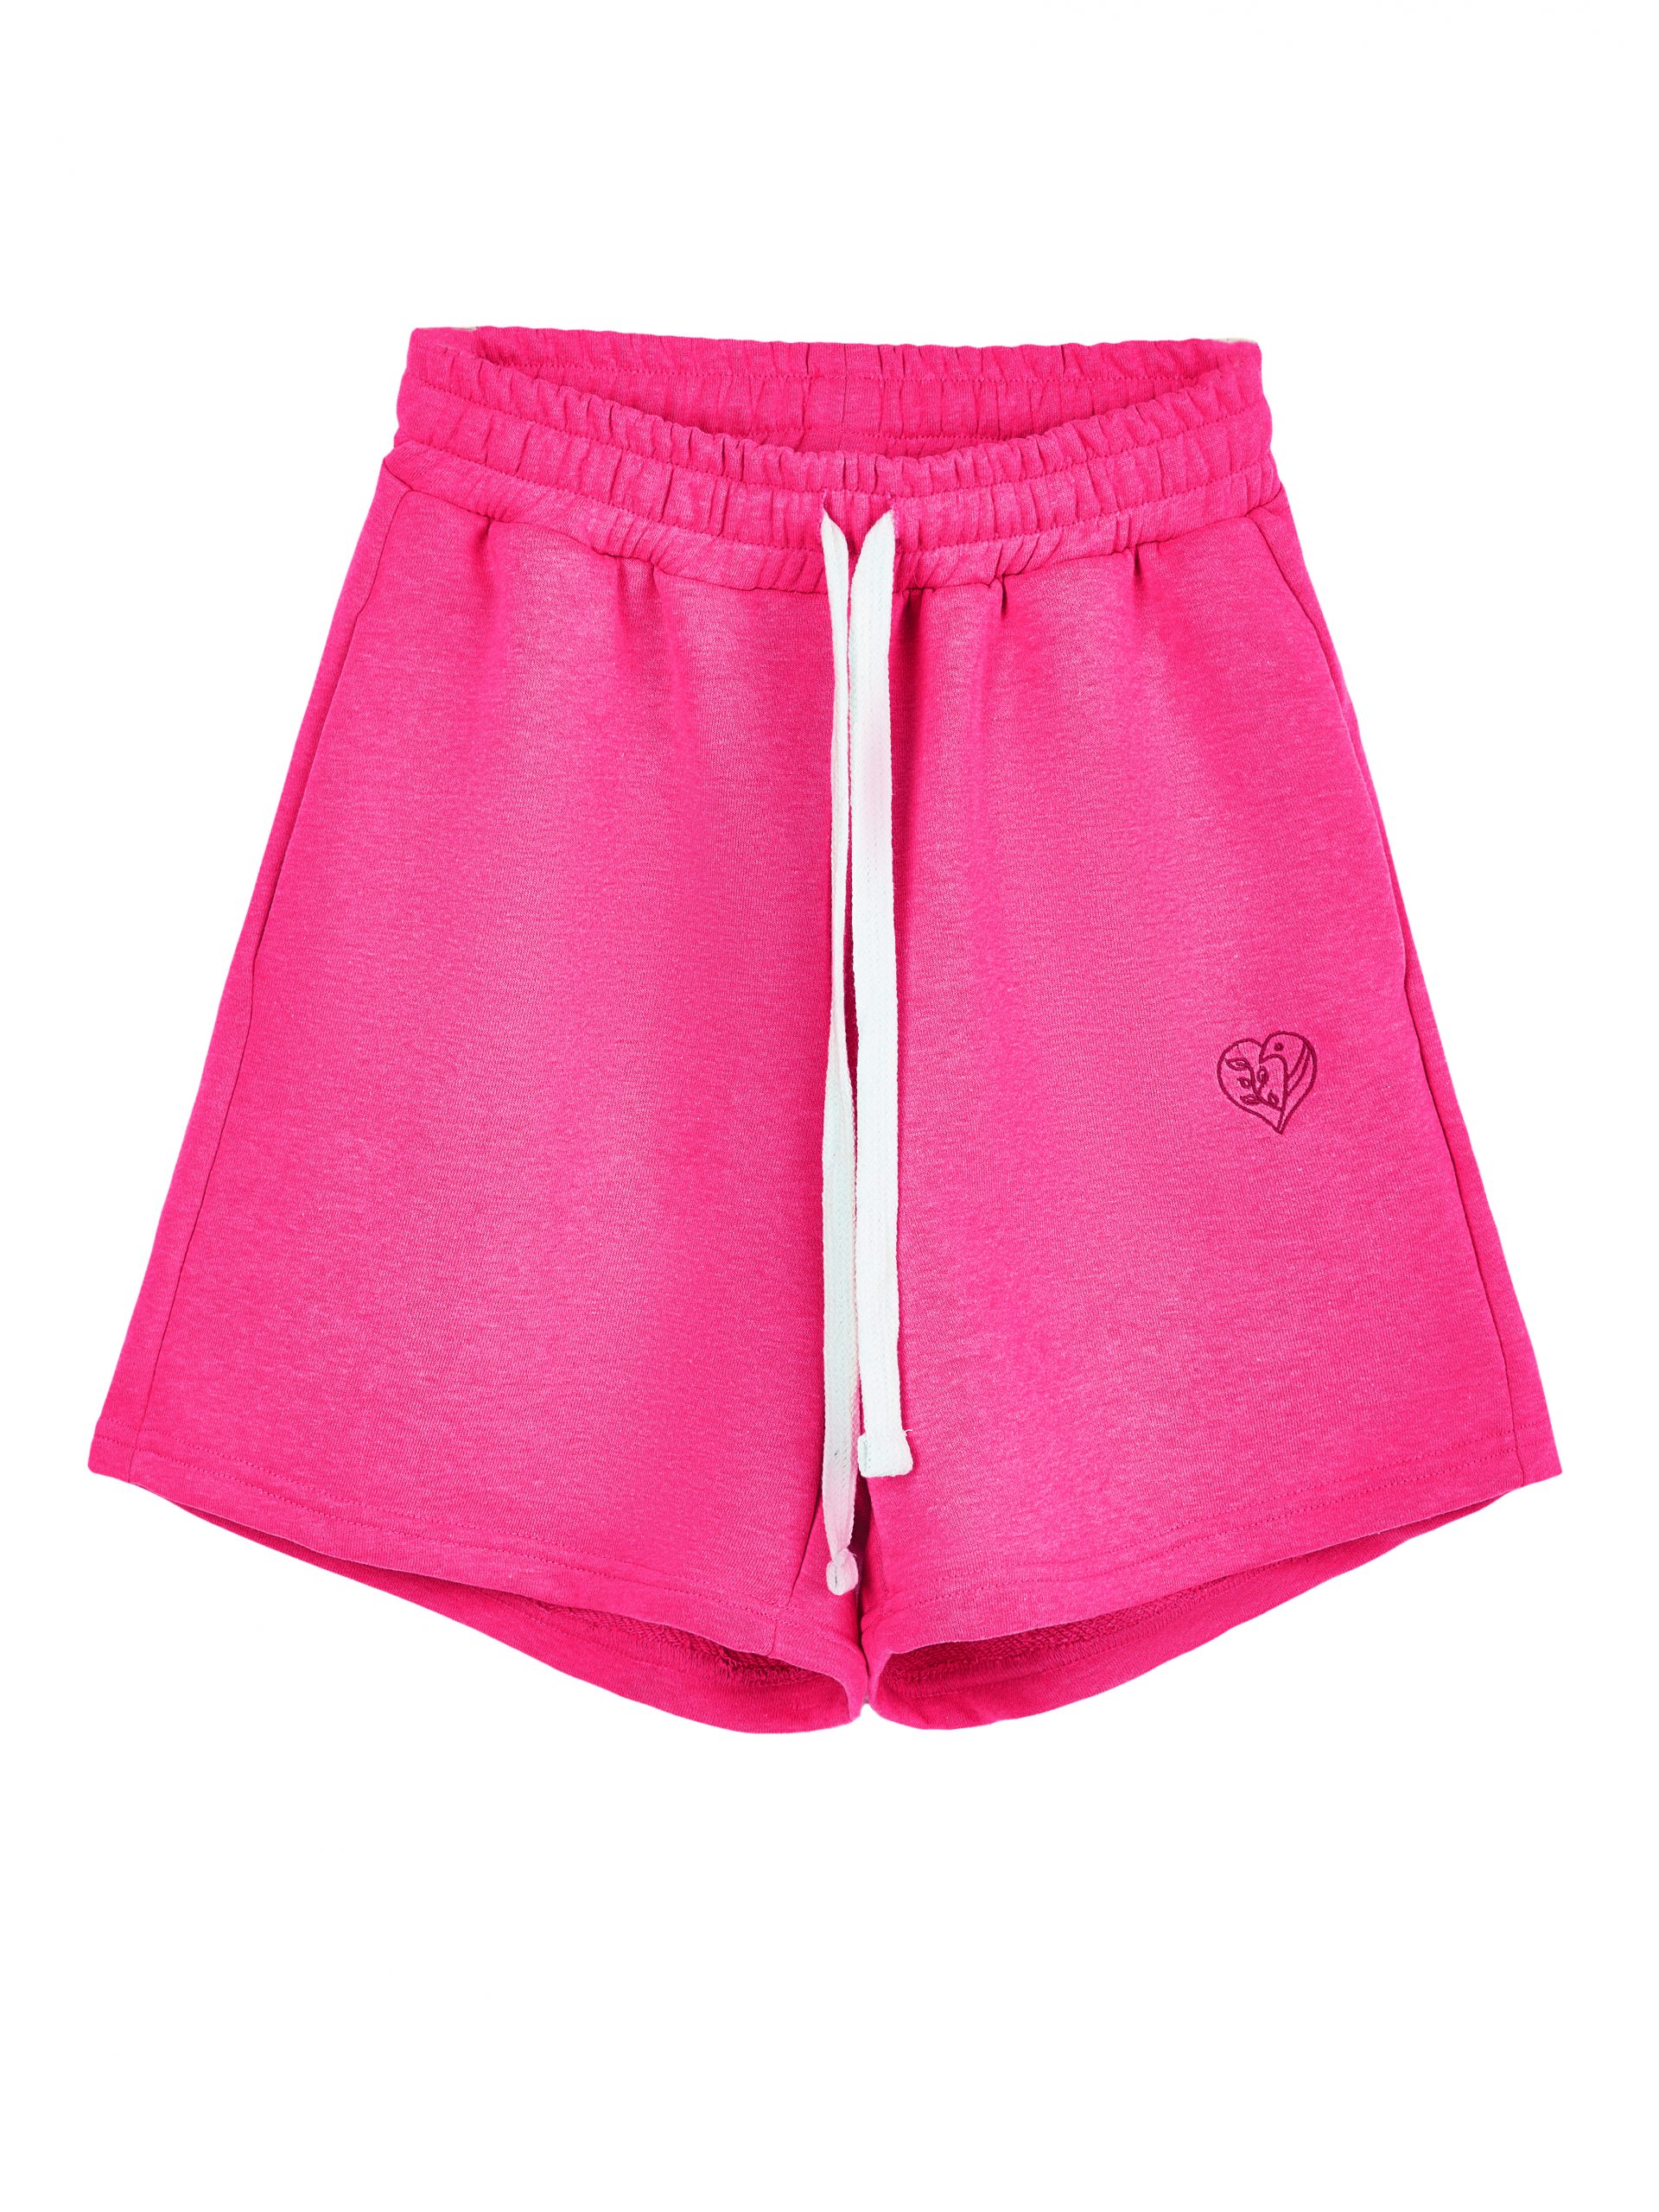 Повседневные шорты женские Atmosphere Summer vibes Color розовые L